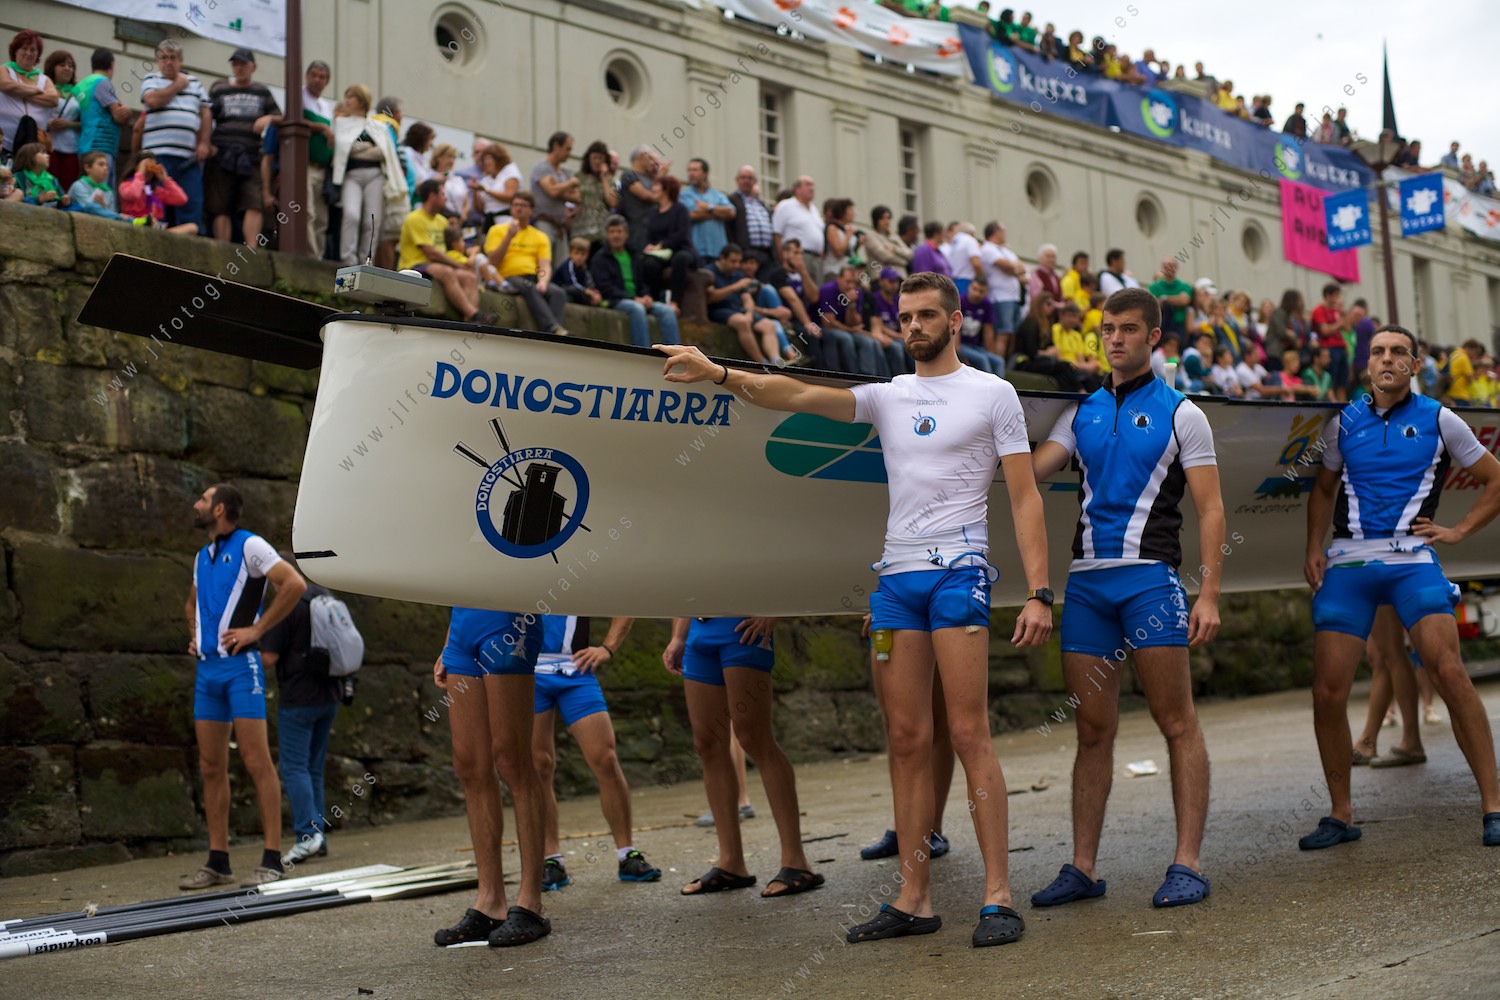 La Donostiarra, el club de remo de la ciudad de Donostia, en la regata de su casa, la bandera de la Concha, preparados antes de entrar en el agua